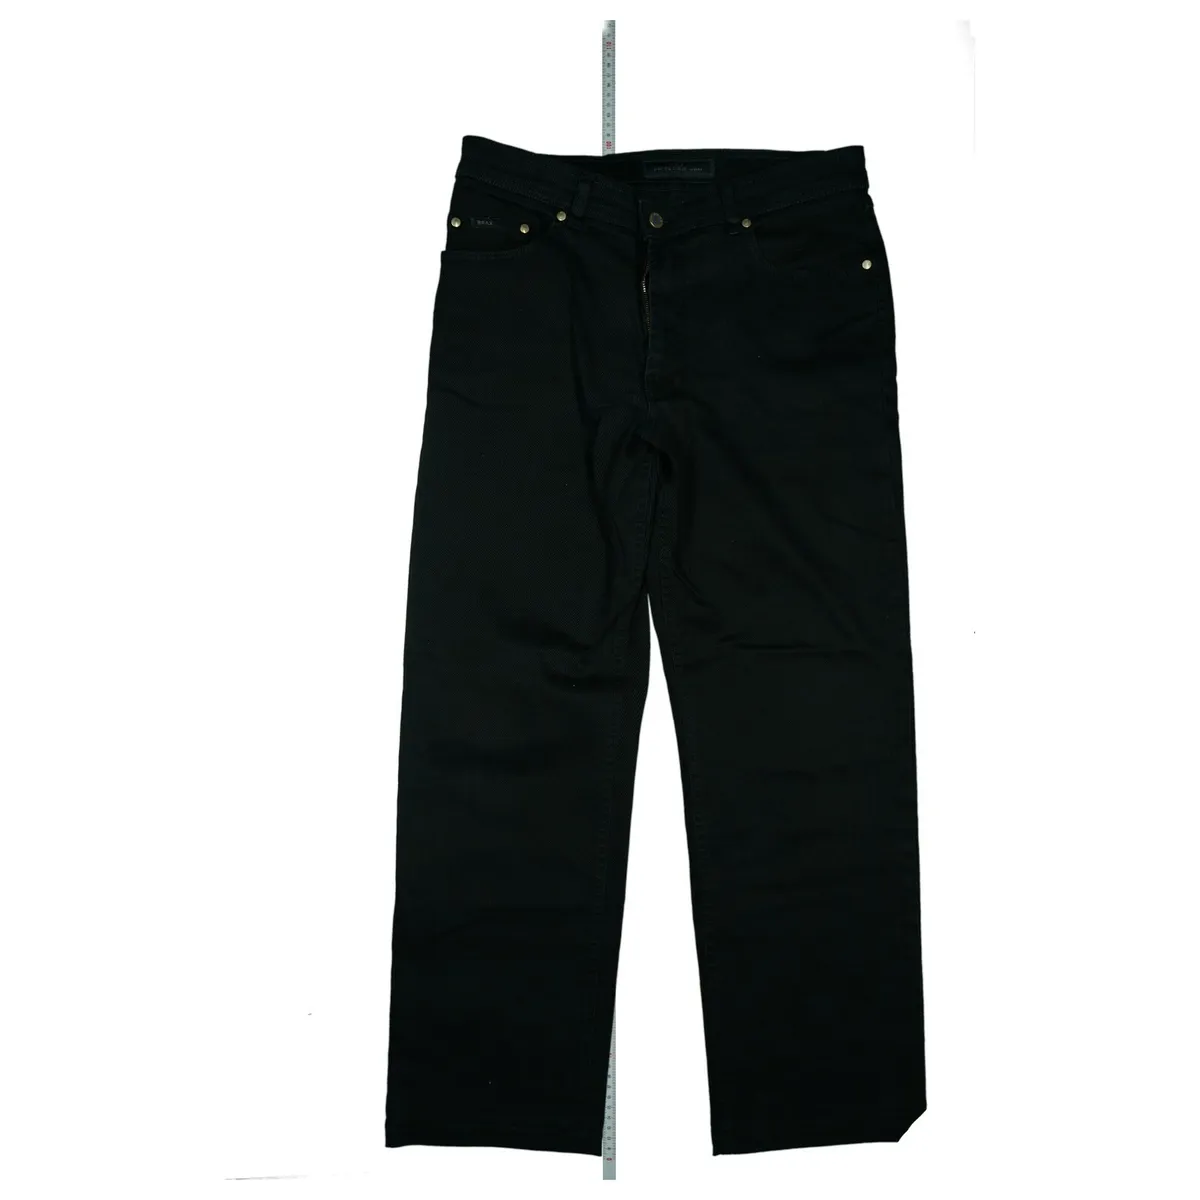 Perma Black By BRAX Carlos Men\'s Jeans Pants Stretch Size 50 W34 L30 Black  Top | eBay